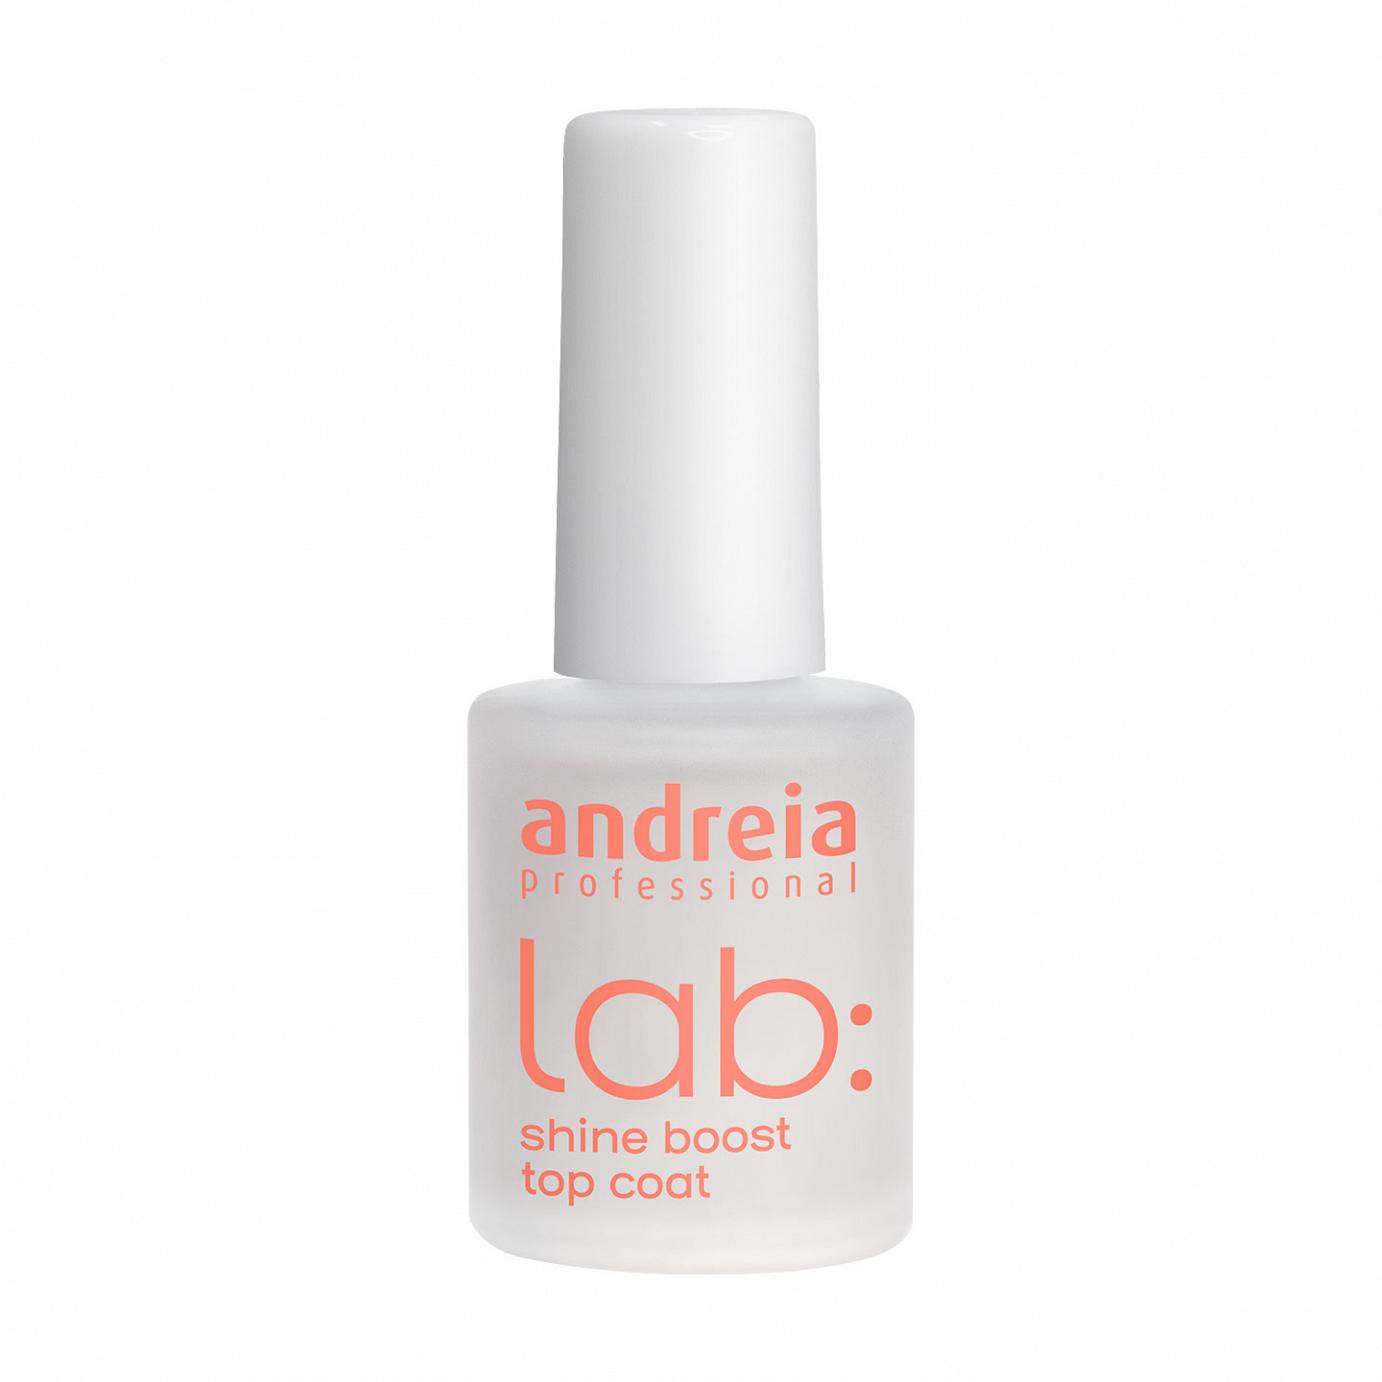 Andreia Lab verniz extra brilho para unhas